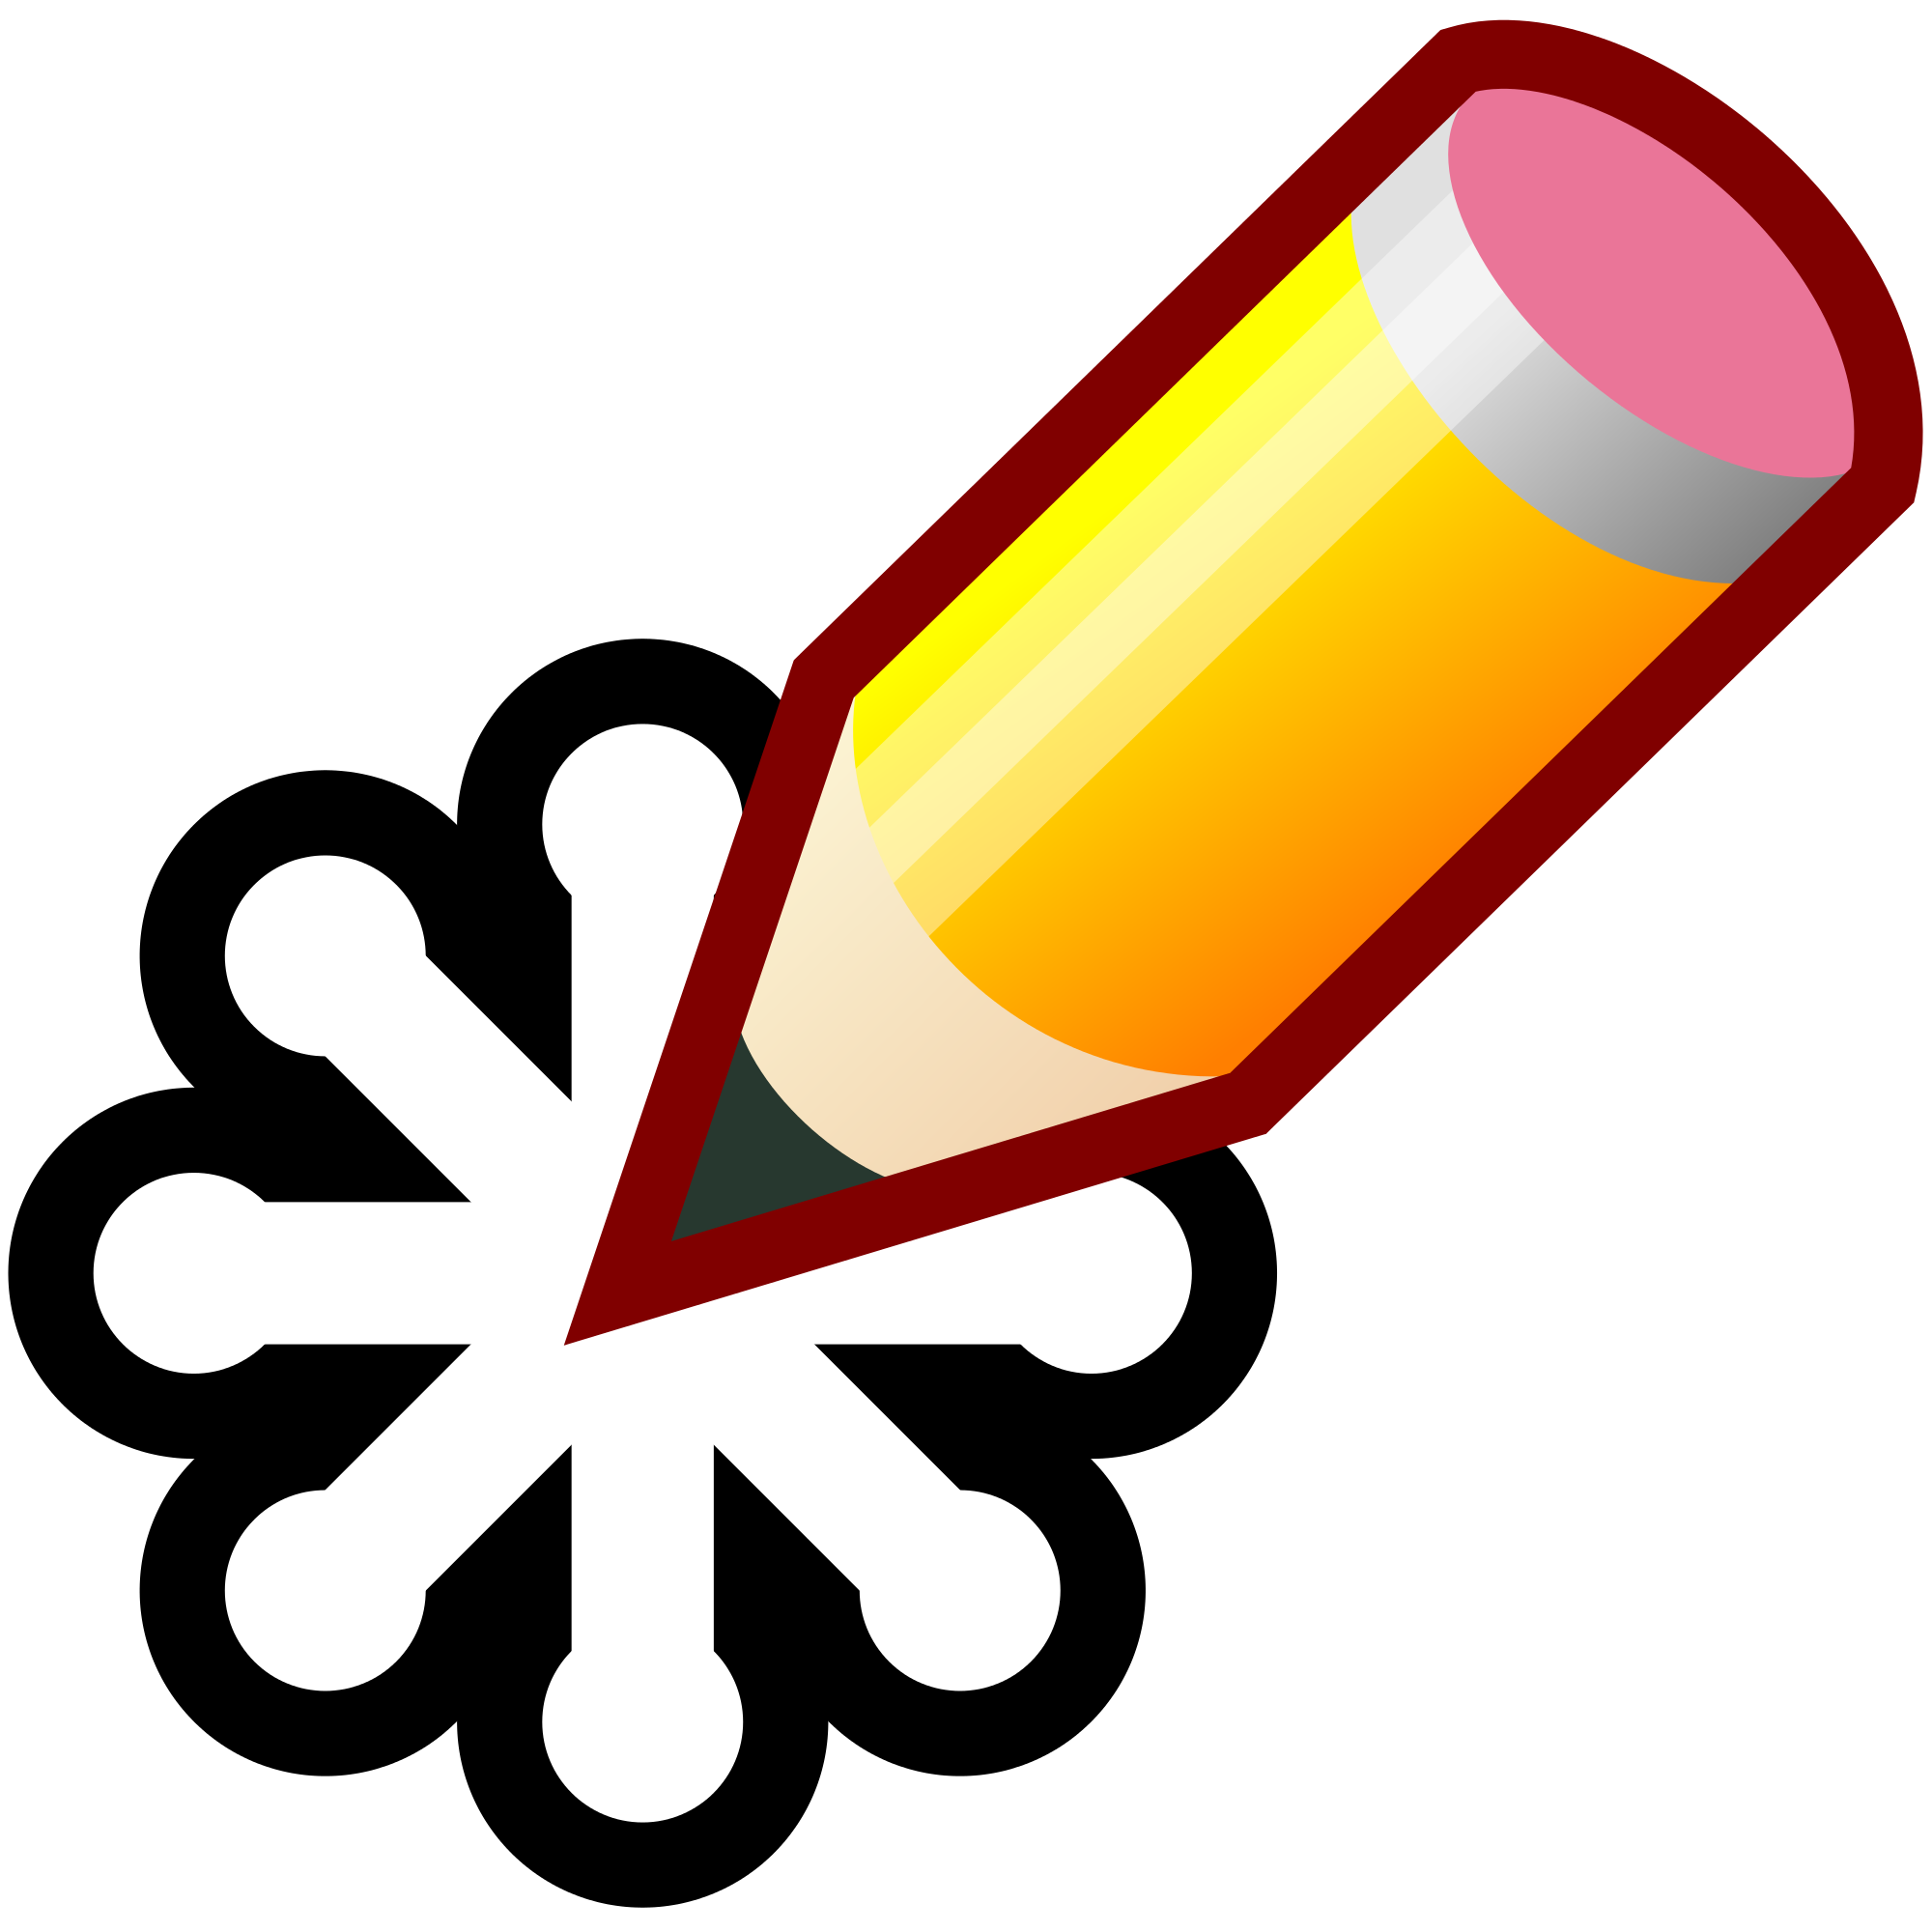 File:SVG-edit logo.svg